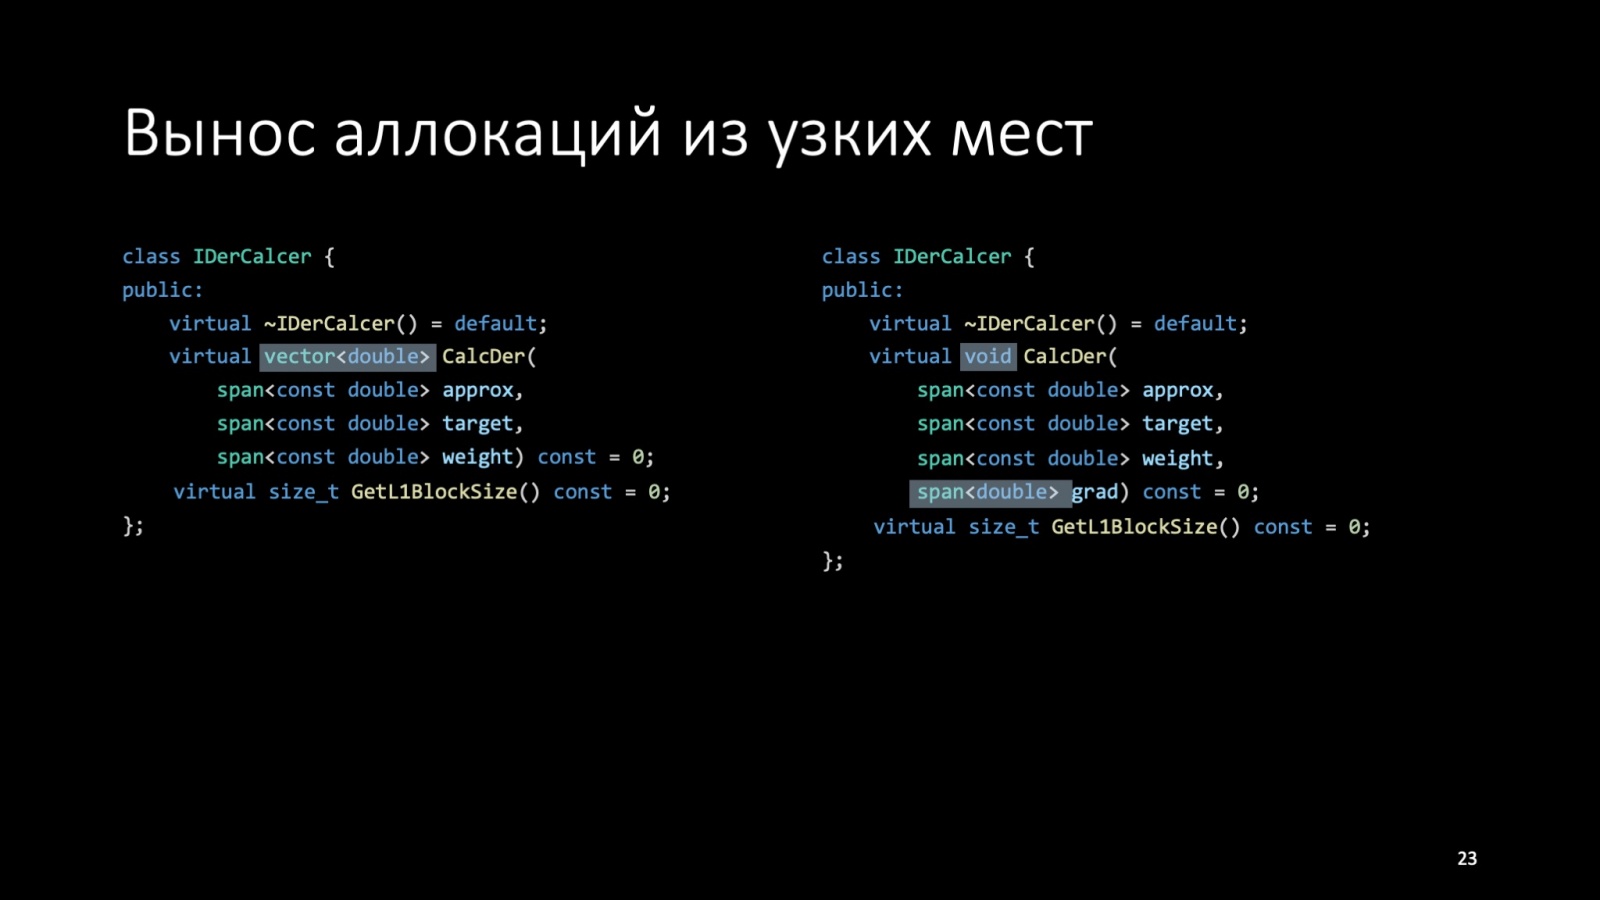 Оптимизация C++: совмещаем скорость и высокий уровень. Доклад Яндекса - 23